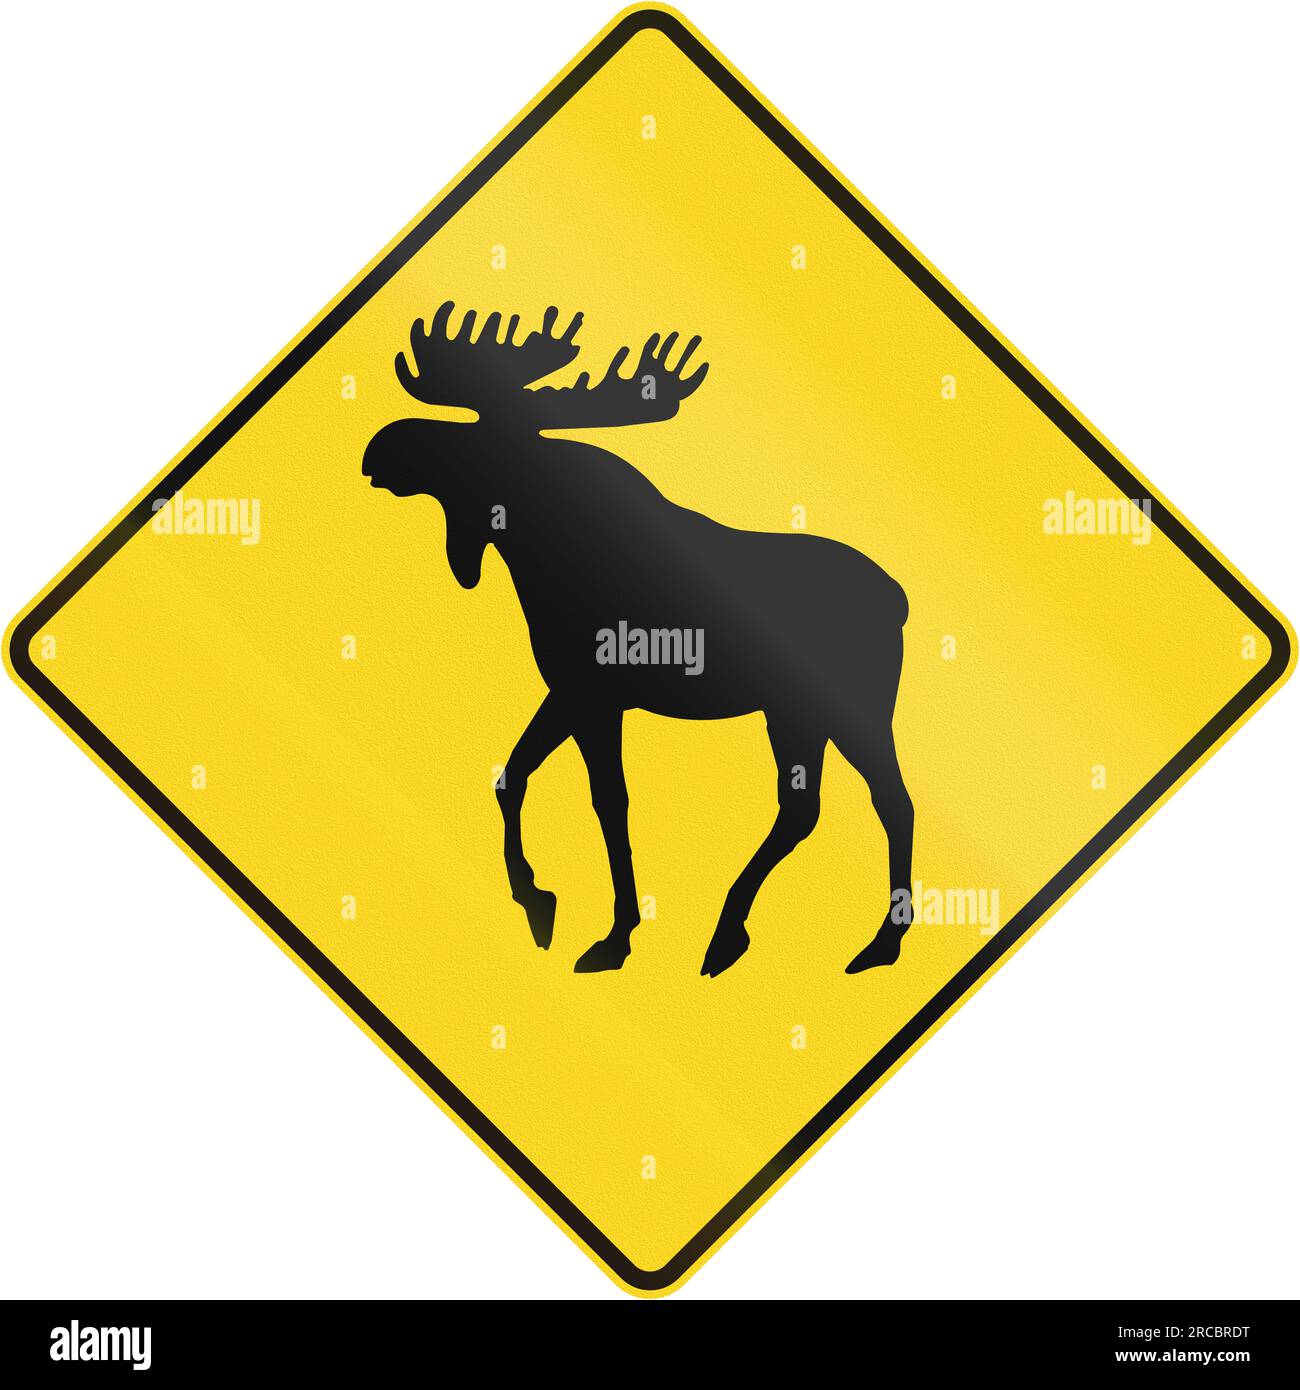 Panneau d'avertissement routier canadien - passage à niveau. Cette enseigne est utilisée au Québec. Banque D'Images